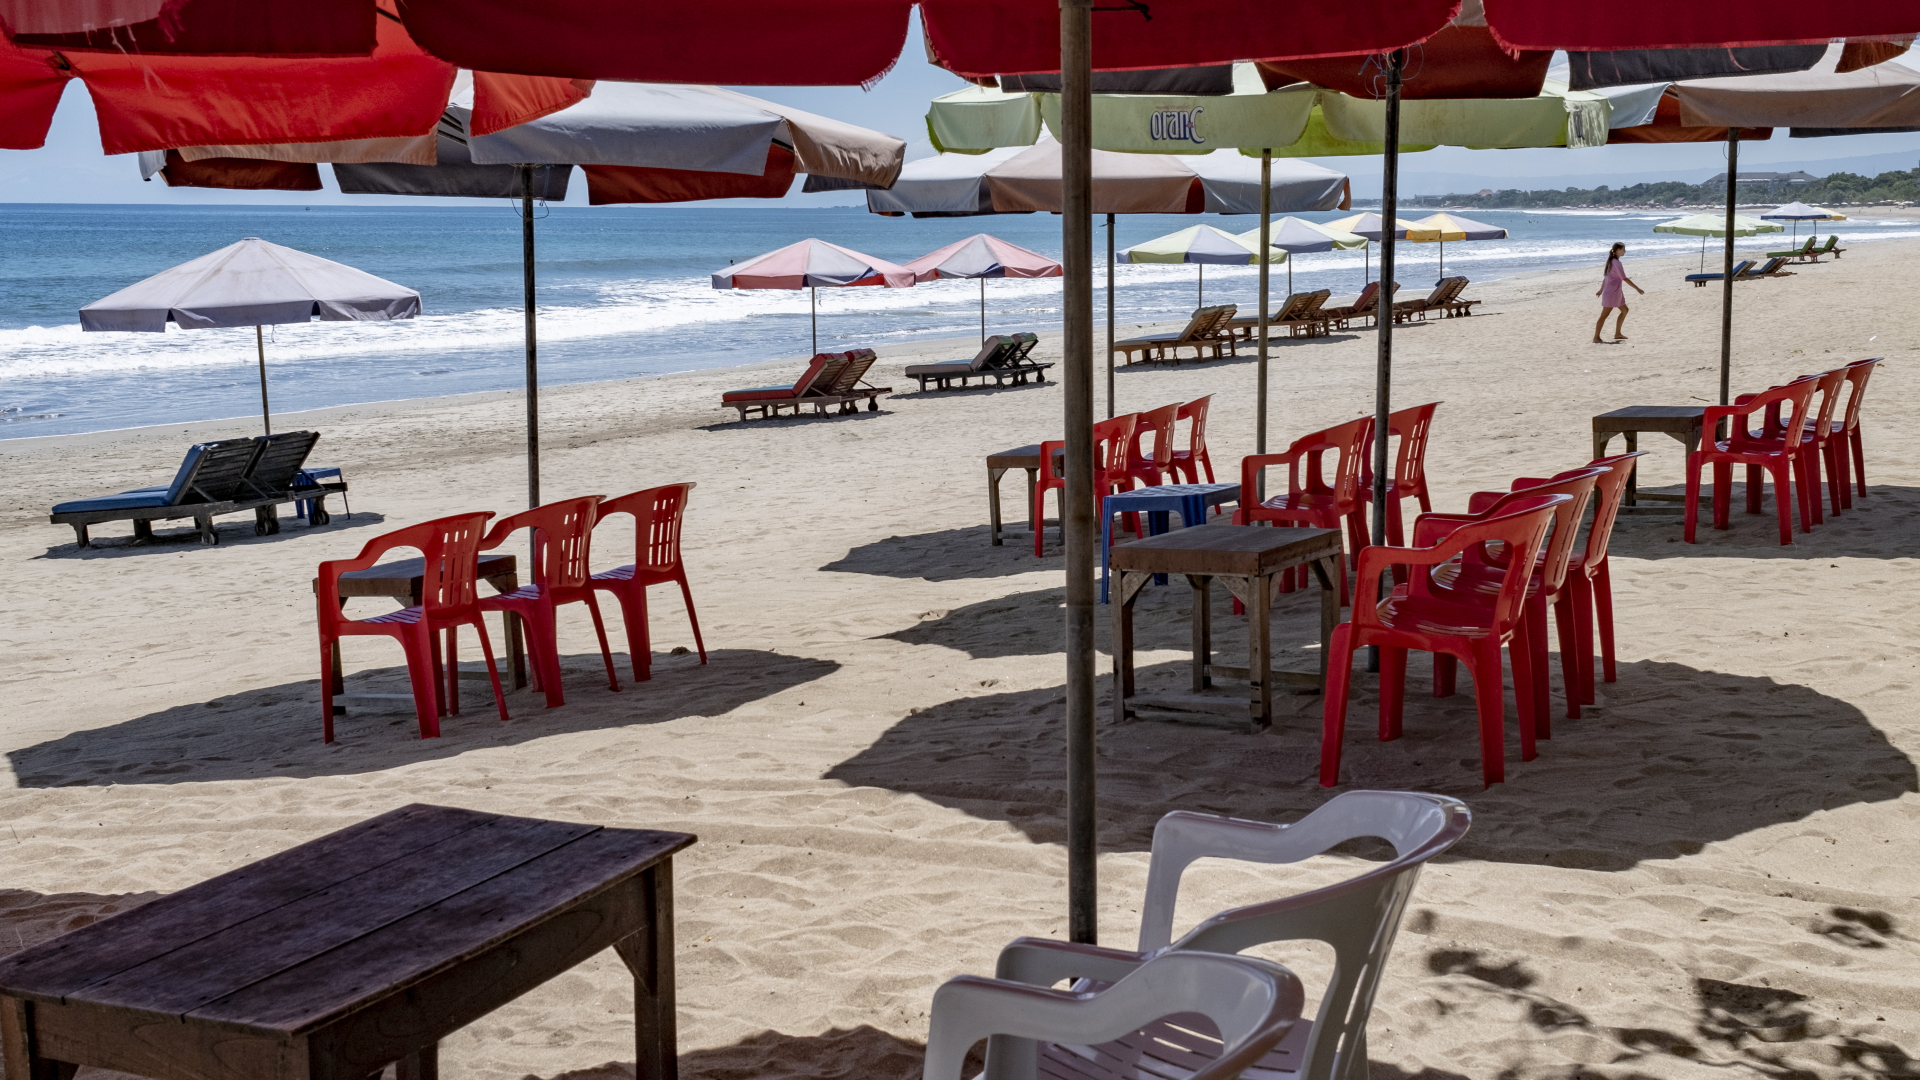 Leere Liegestühle an einem Strand auf der Insel Bali.